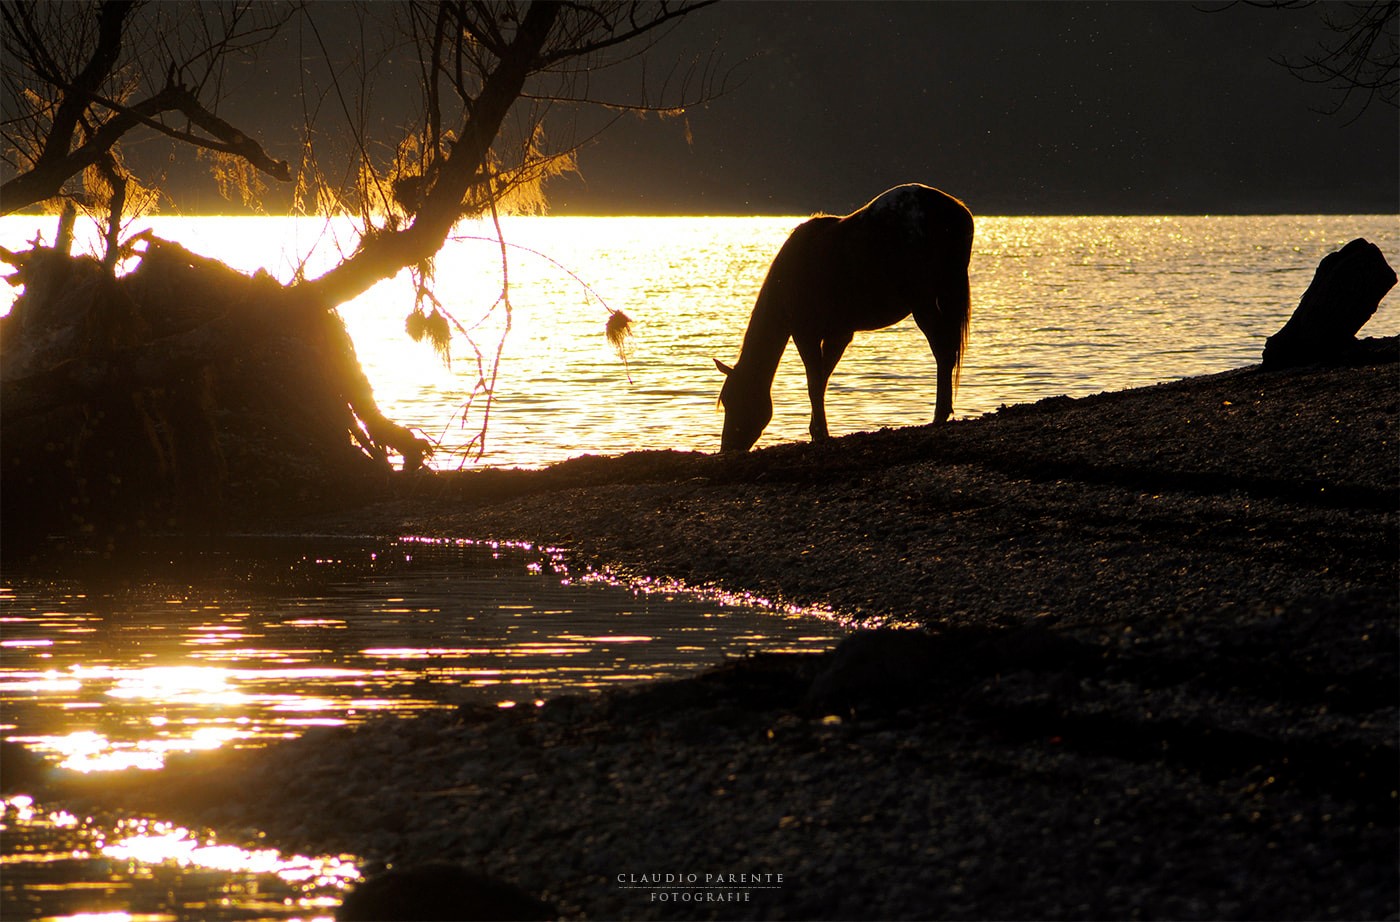 Abruzzo. Cavalli e sorsi di luce sul Lago di Barrea, un quadro magico e surreale